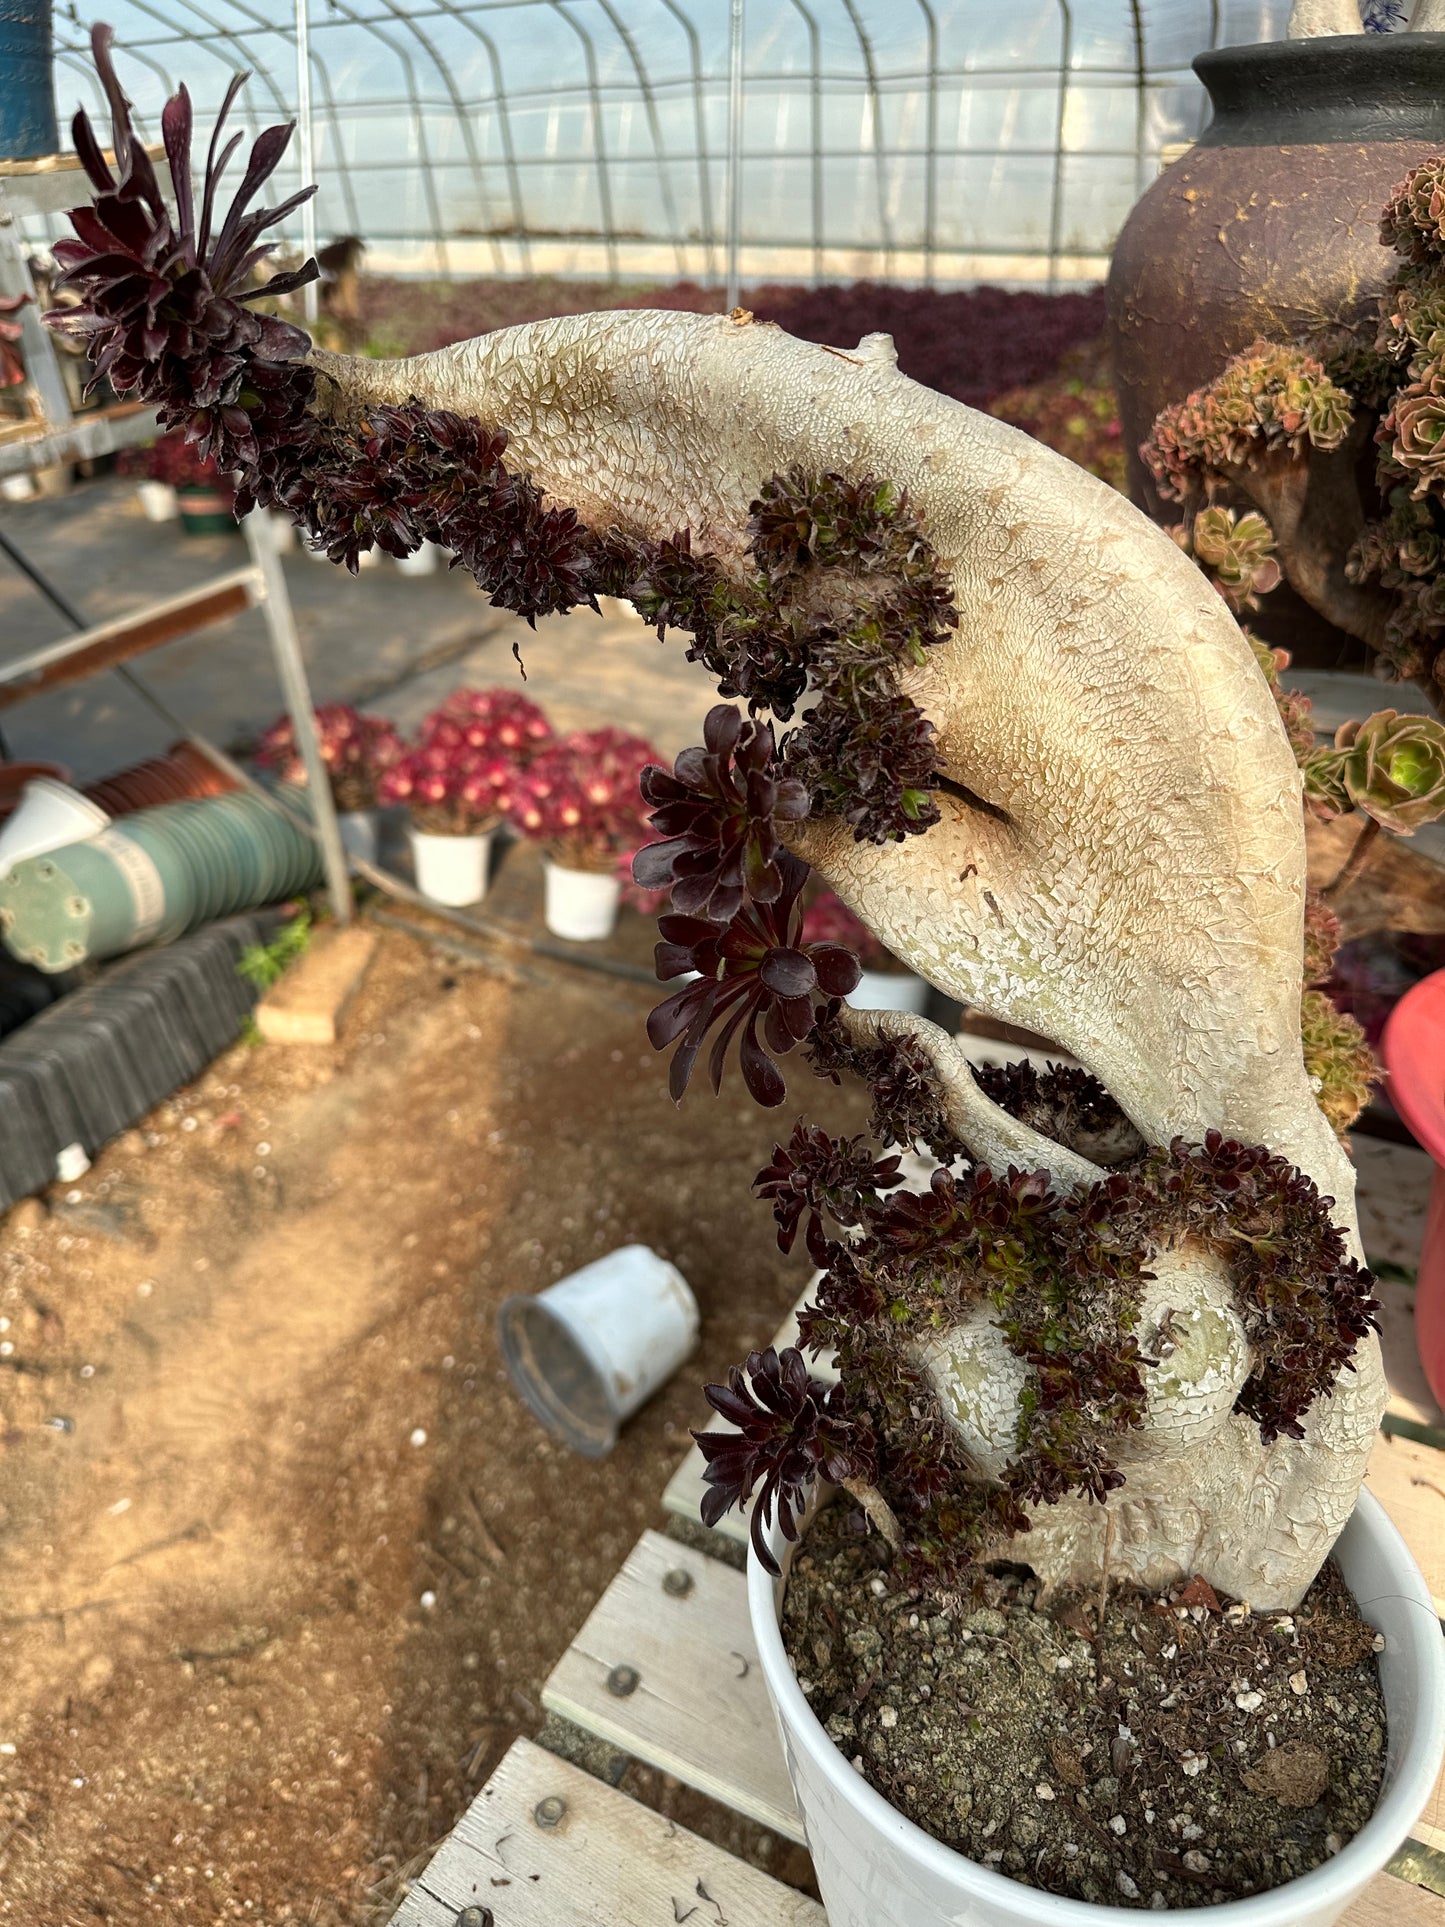 Aeonium 'Zwartkop' mit Haube, 40 cm hoch/35 cm breit, hat Wurzeln/Aeonium Affix / Bunte natürliche lebende Pflanzen, Sukkulenten